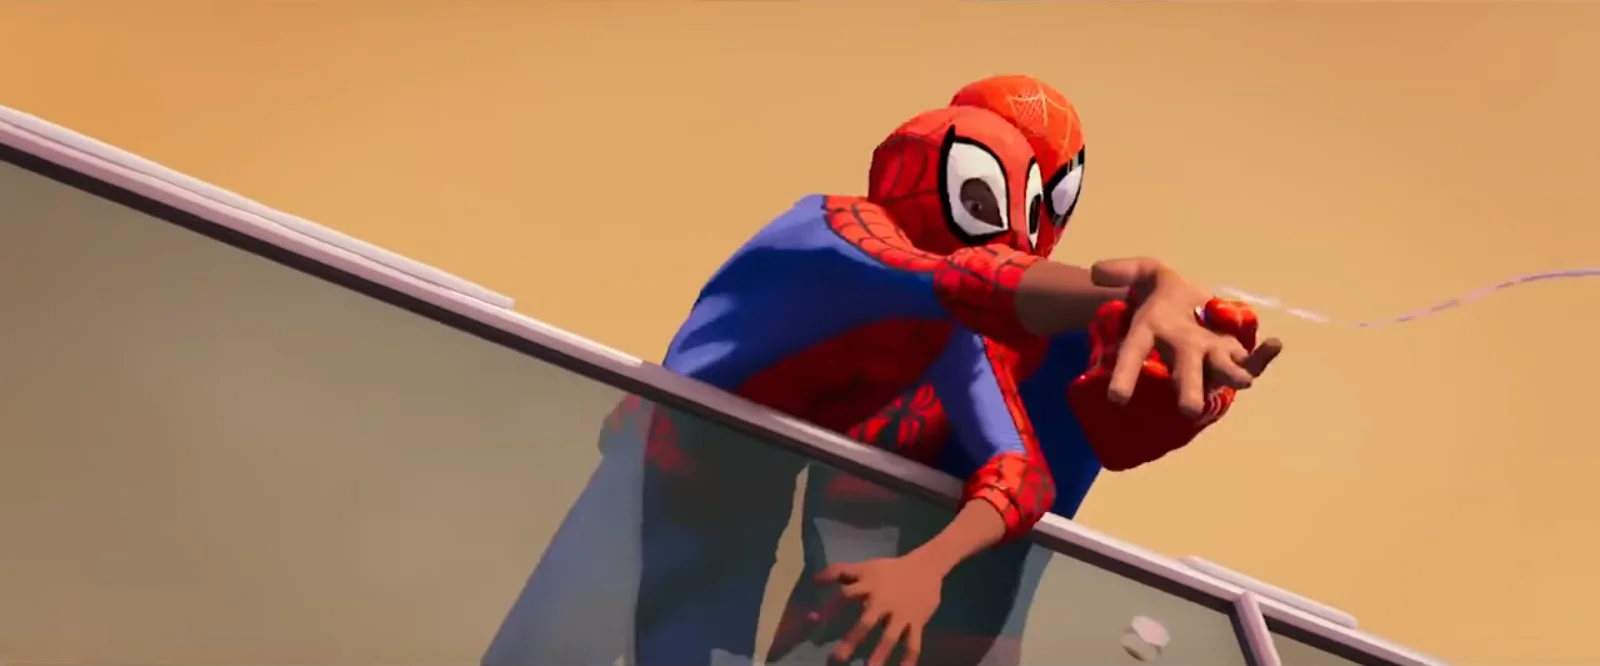 Что показали в трейлере Spider-Man: Into the Spider-Verse. Зеленый гоблин, Гвен-паук и Кингпин? - фото 15